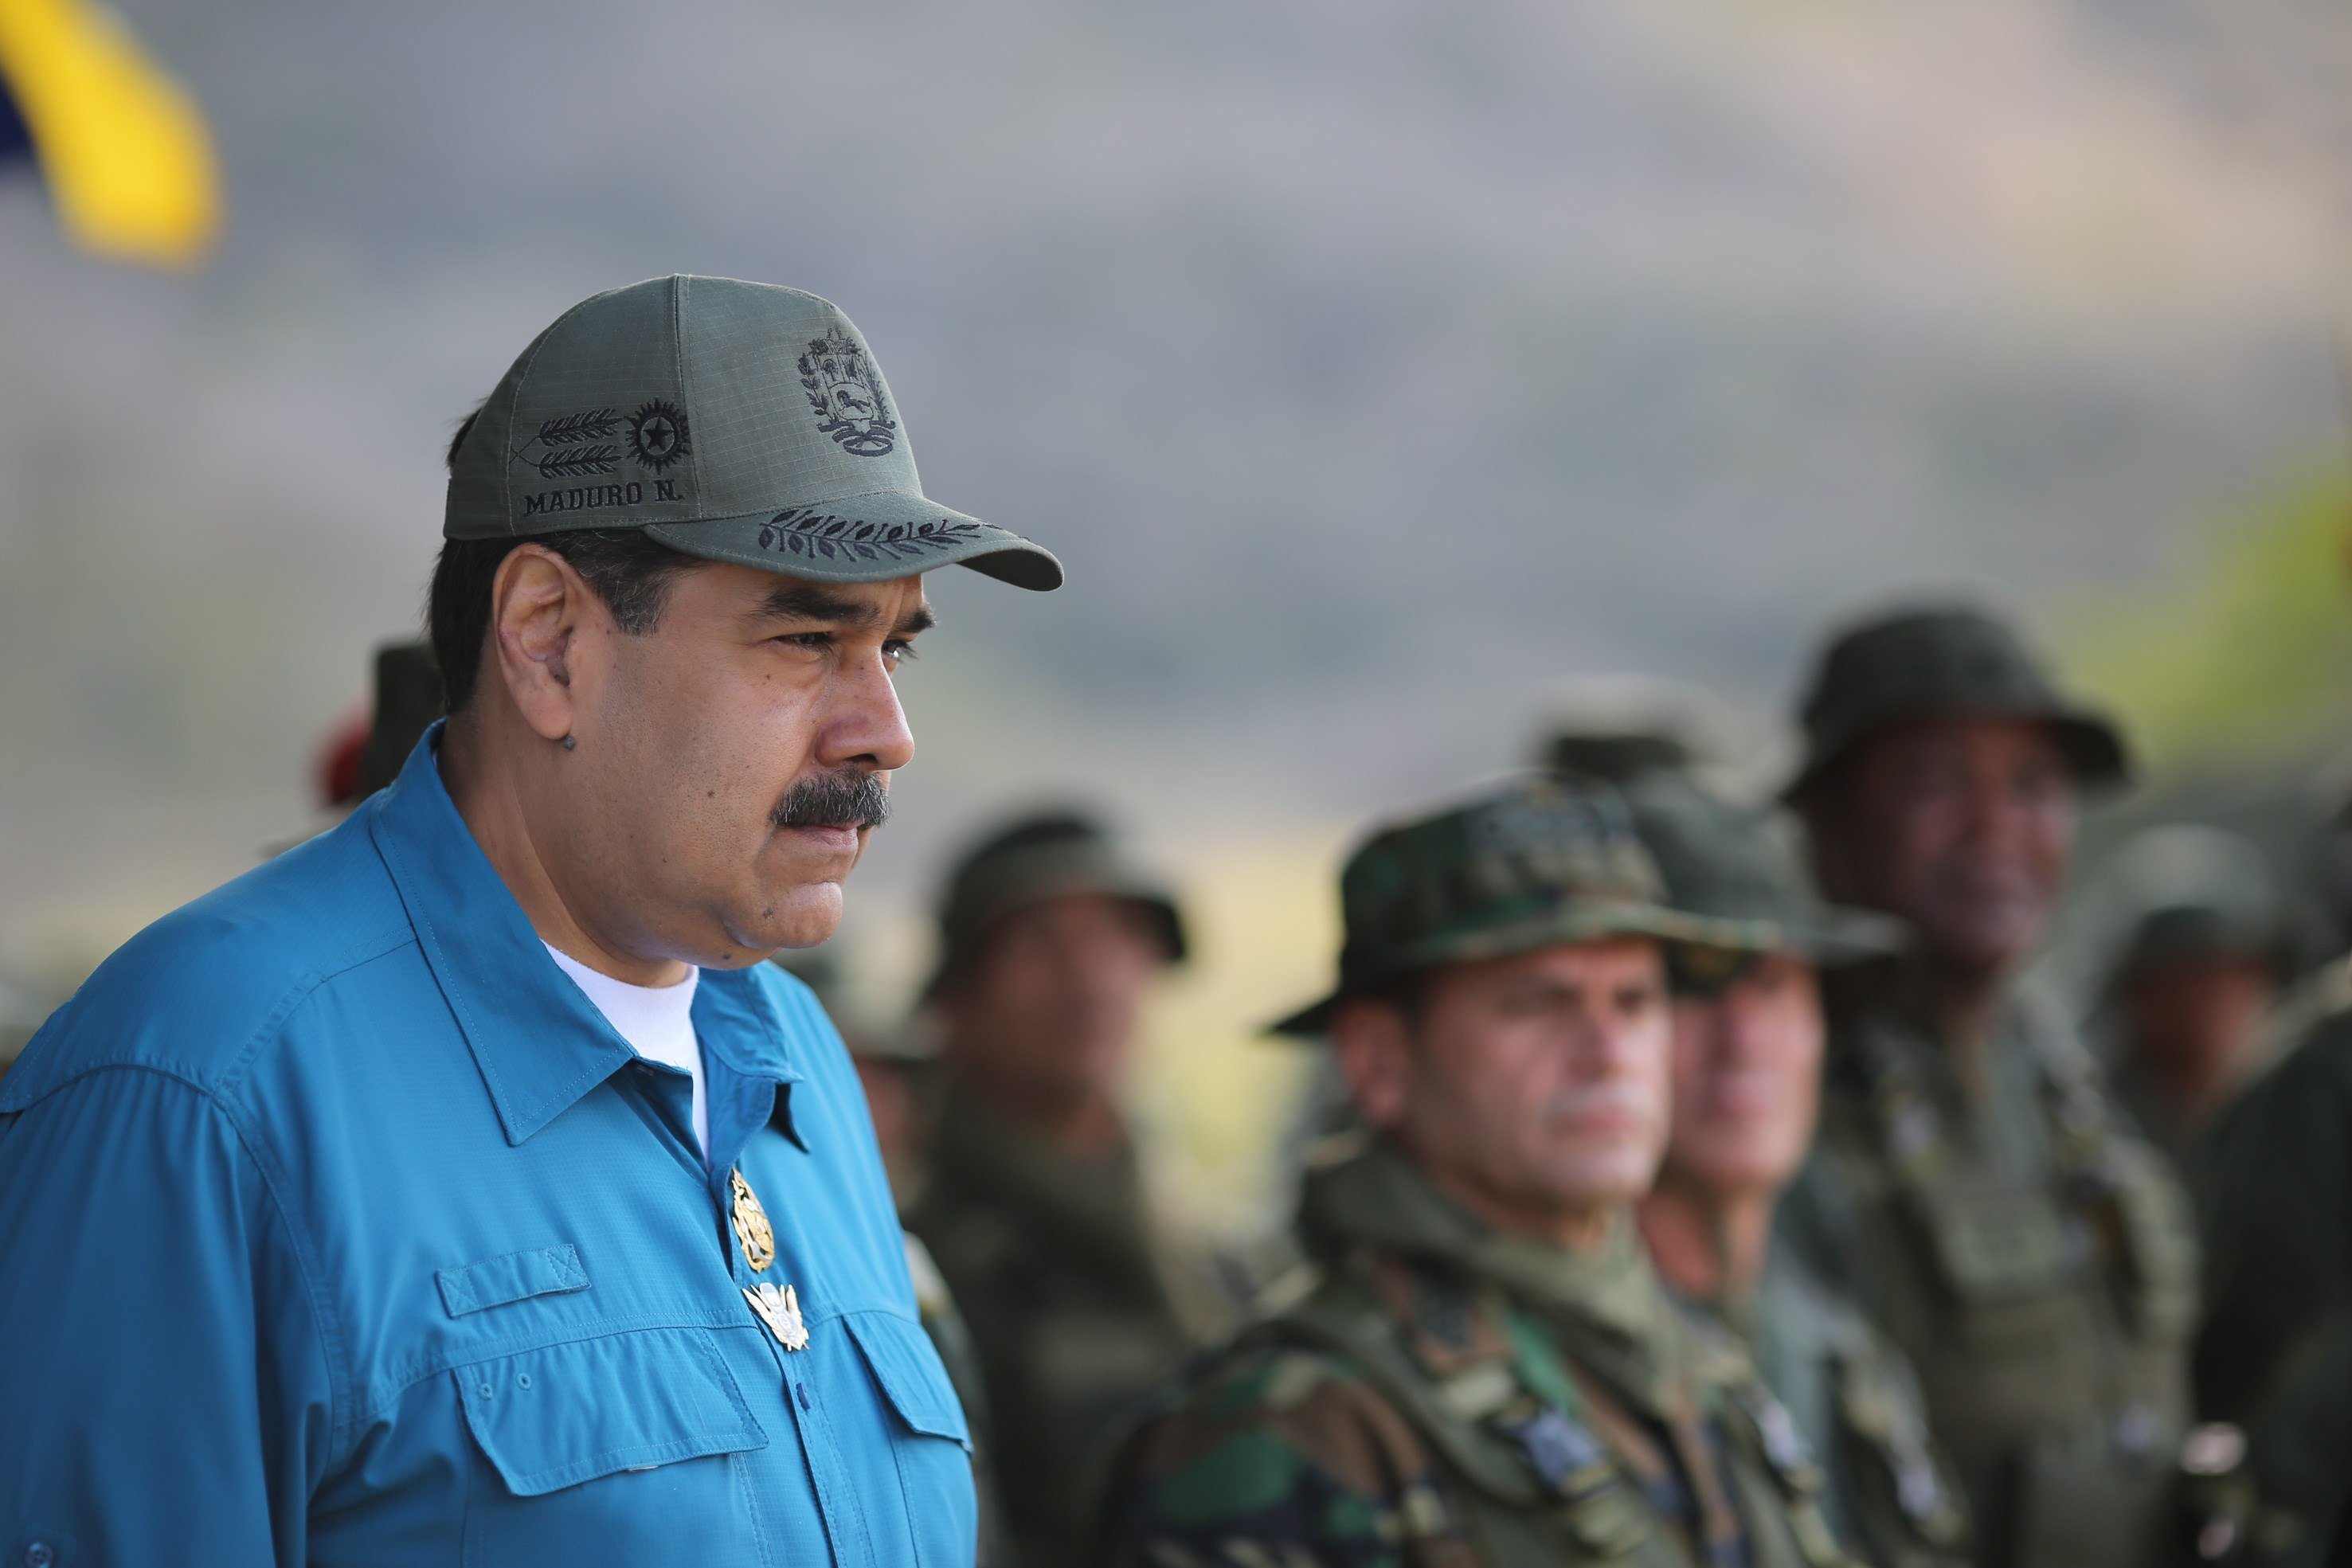 El gobierno de Maduro dice estar "enfrentando y desactivando" un golpe de estado